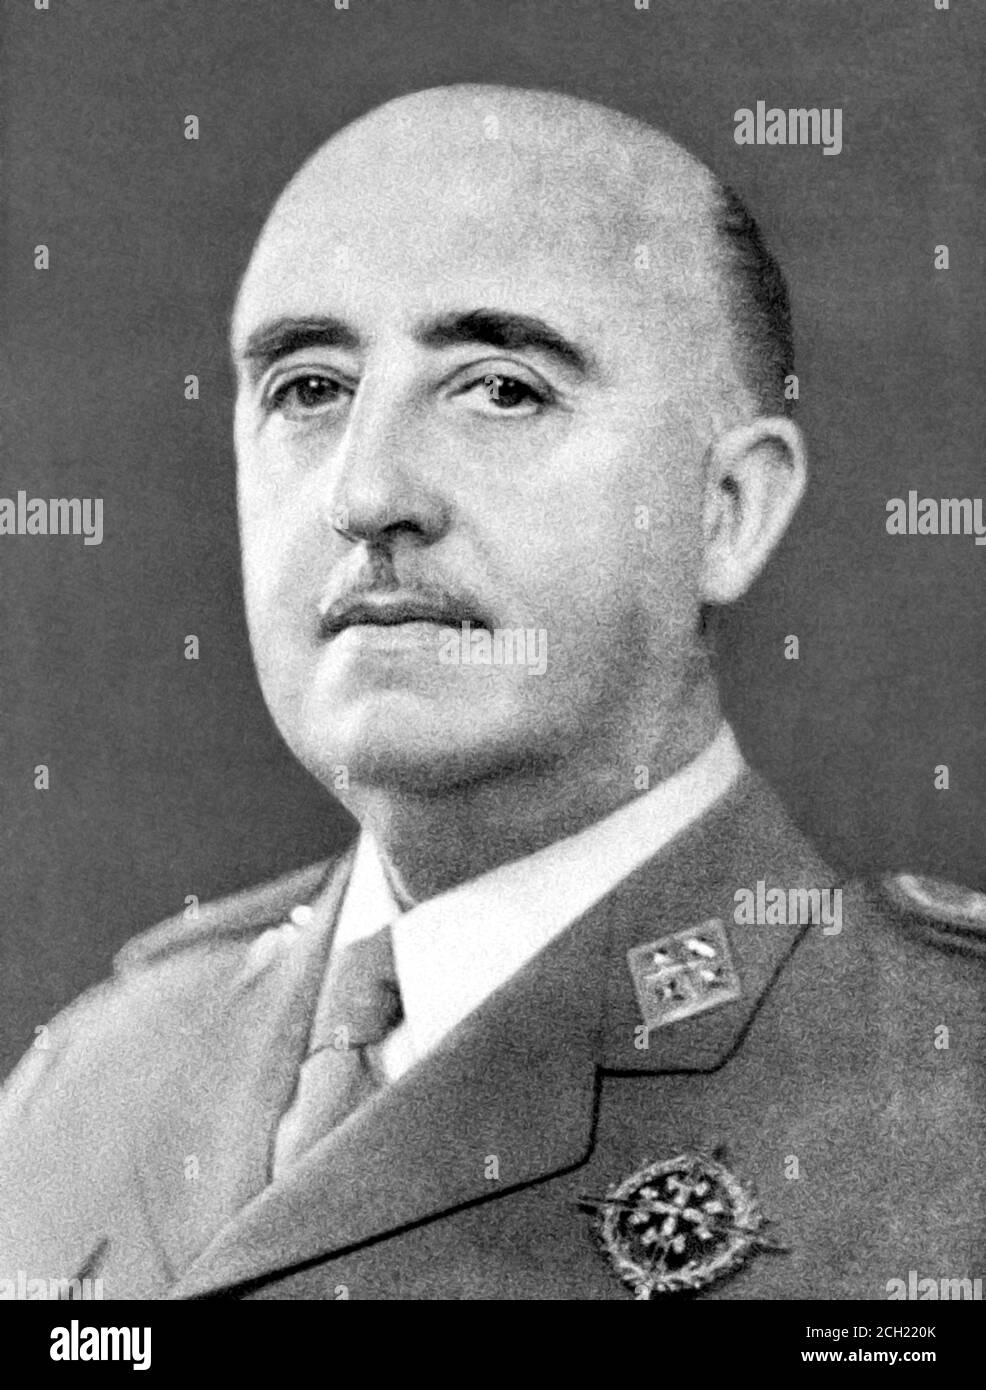 Francisco Franco. Porträt von General Francisco Franco Bahamonde (1892-1975) Stockfoto